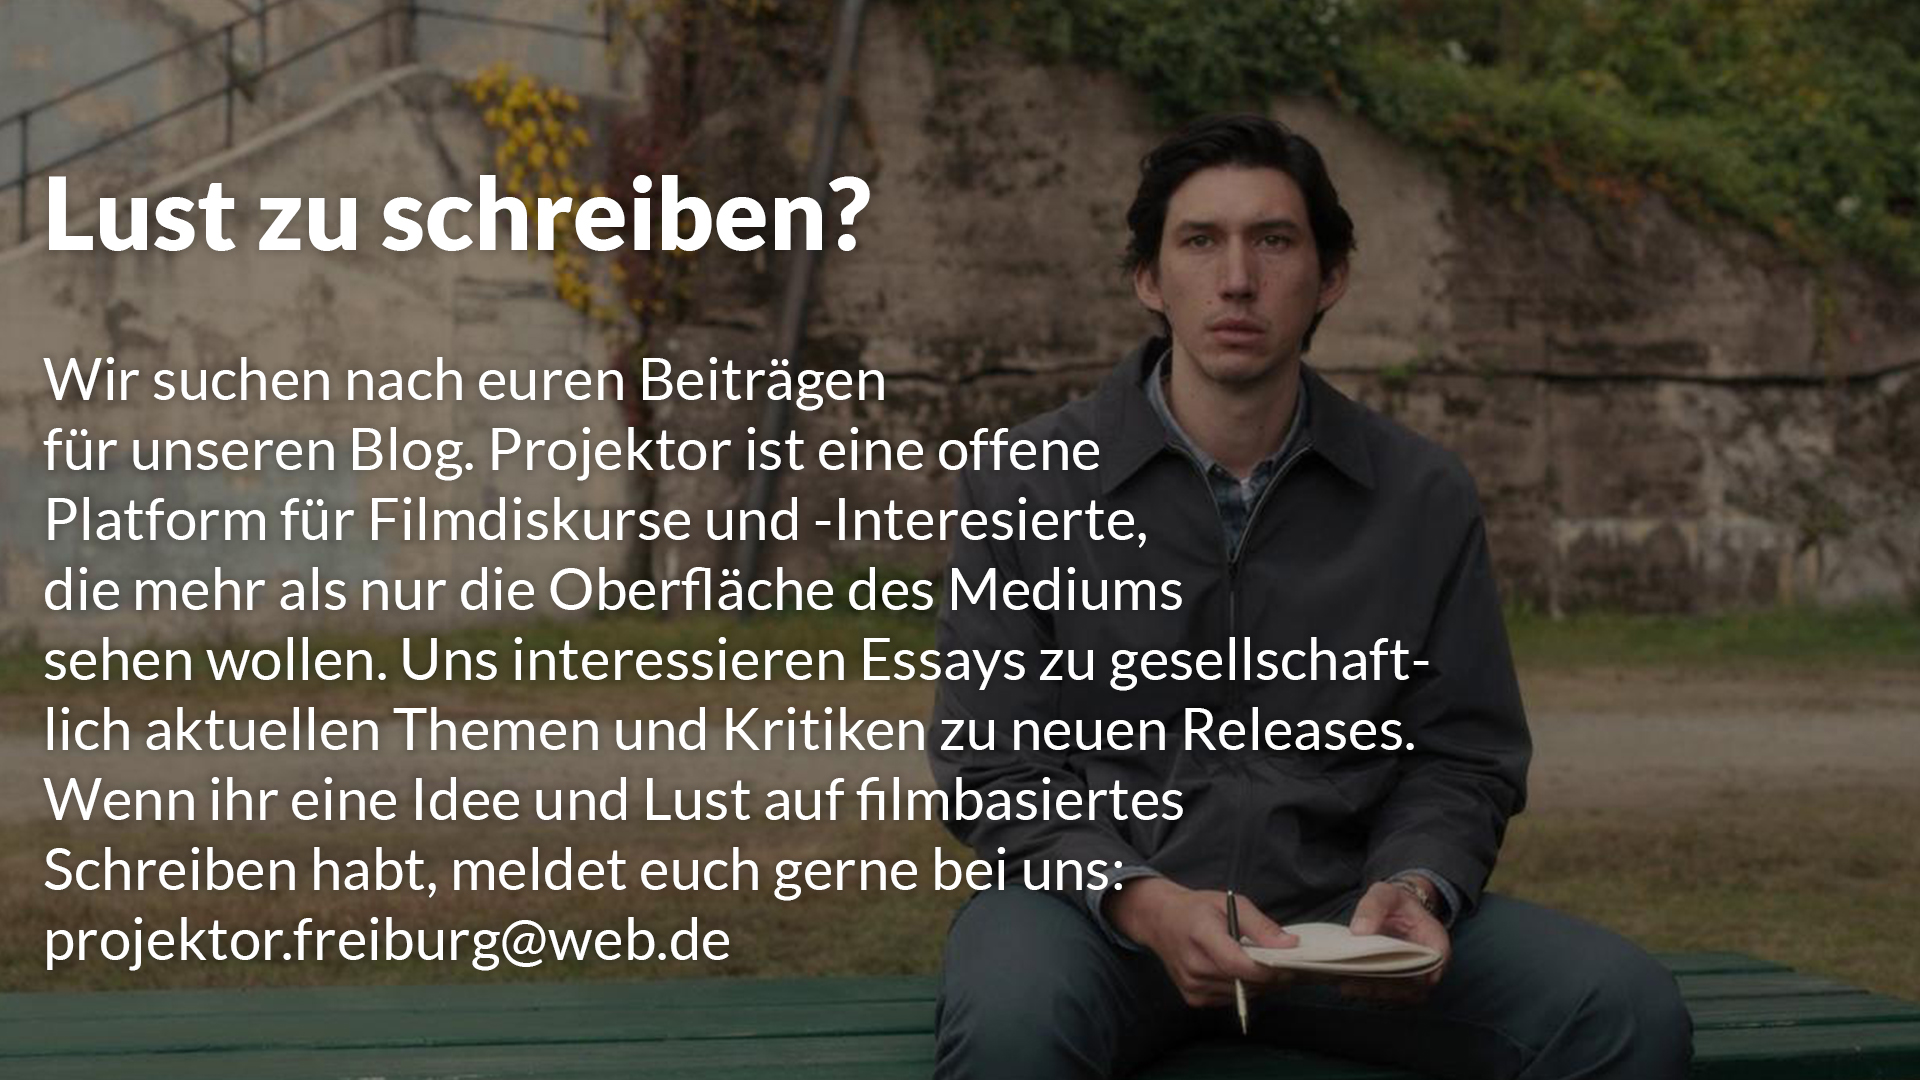 Wollt ihr Texte für uns schreiben? Wir suchen nach Artikeln und Verstärkung für unsere Redaktion. Meldet euch gerne über: projektor.freiburg@web.de